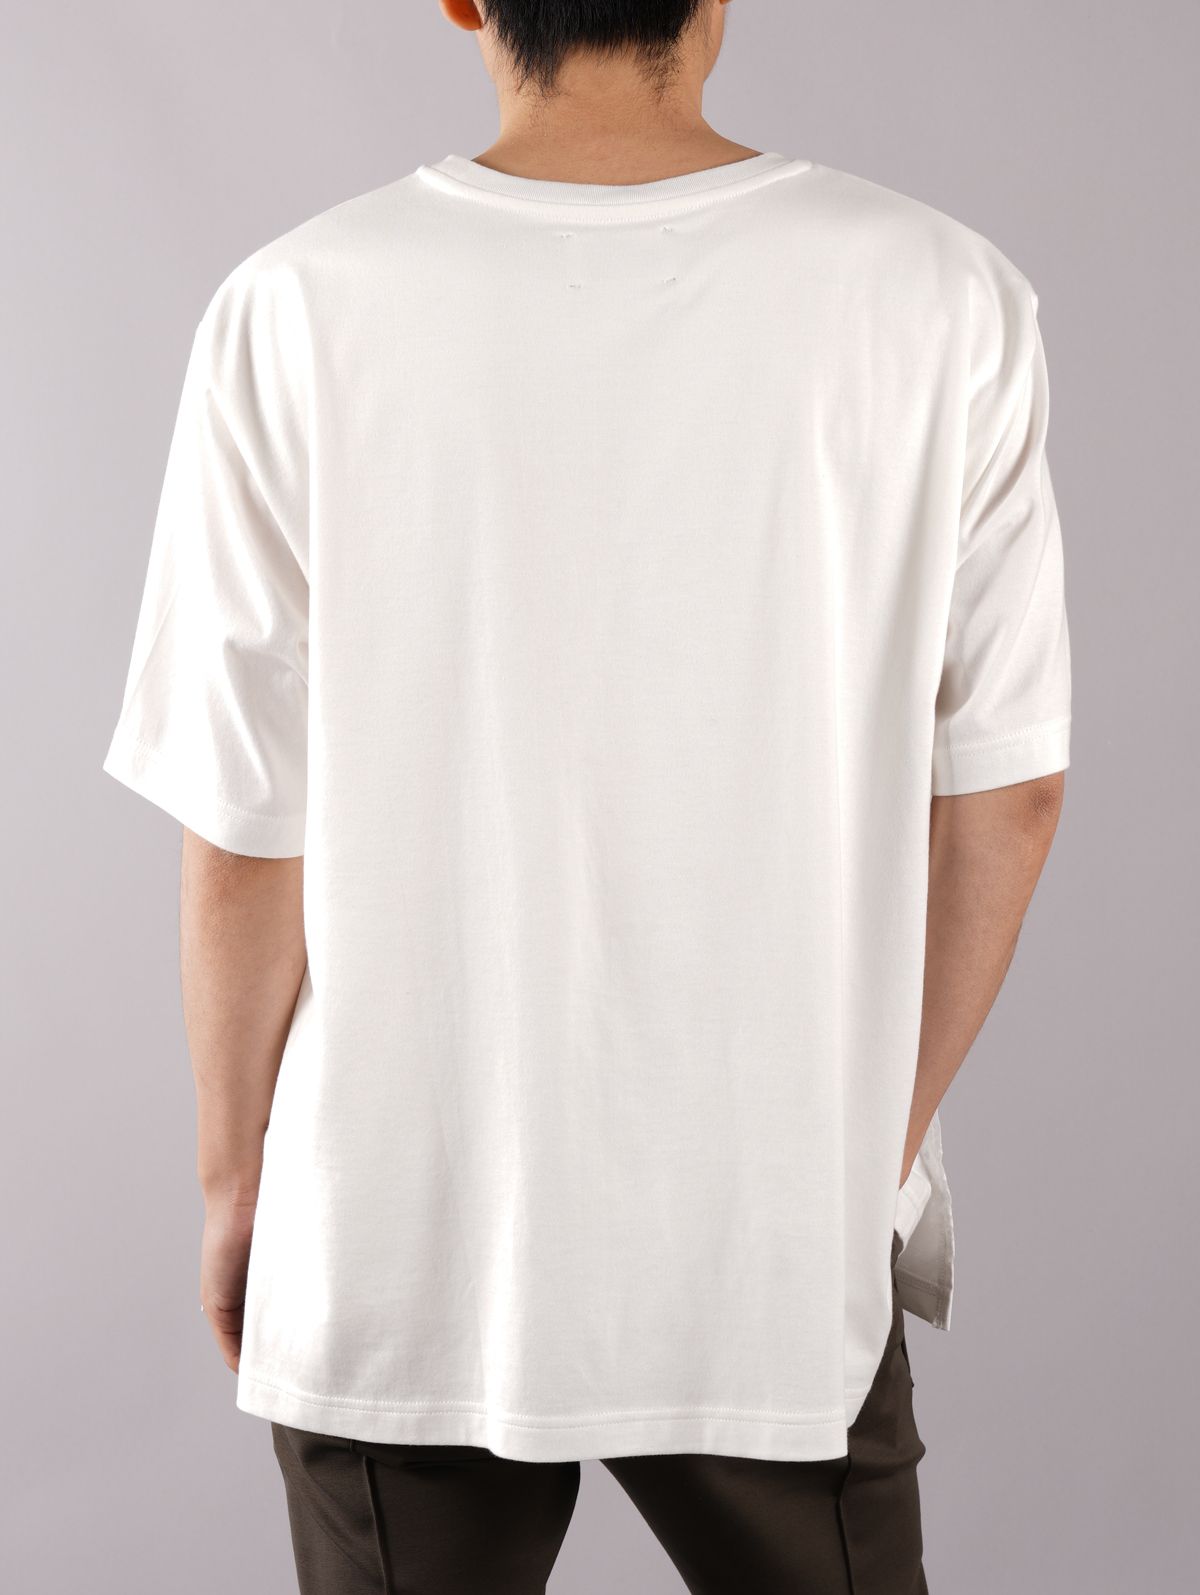 TAAKK - 【ラスト1点】LAYERED T-SHIRTS / レイヤード Tシャツ ...